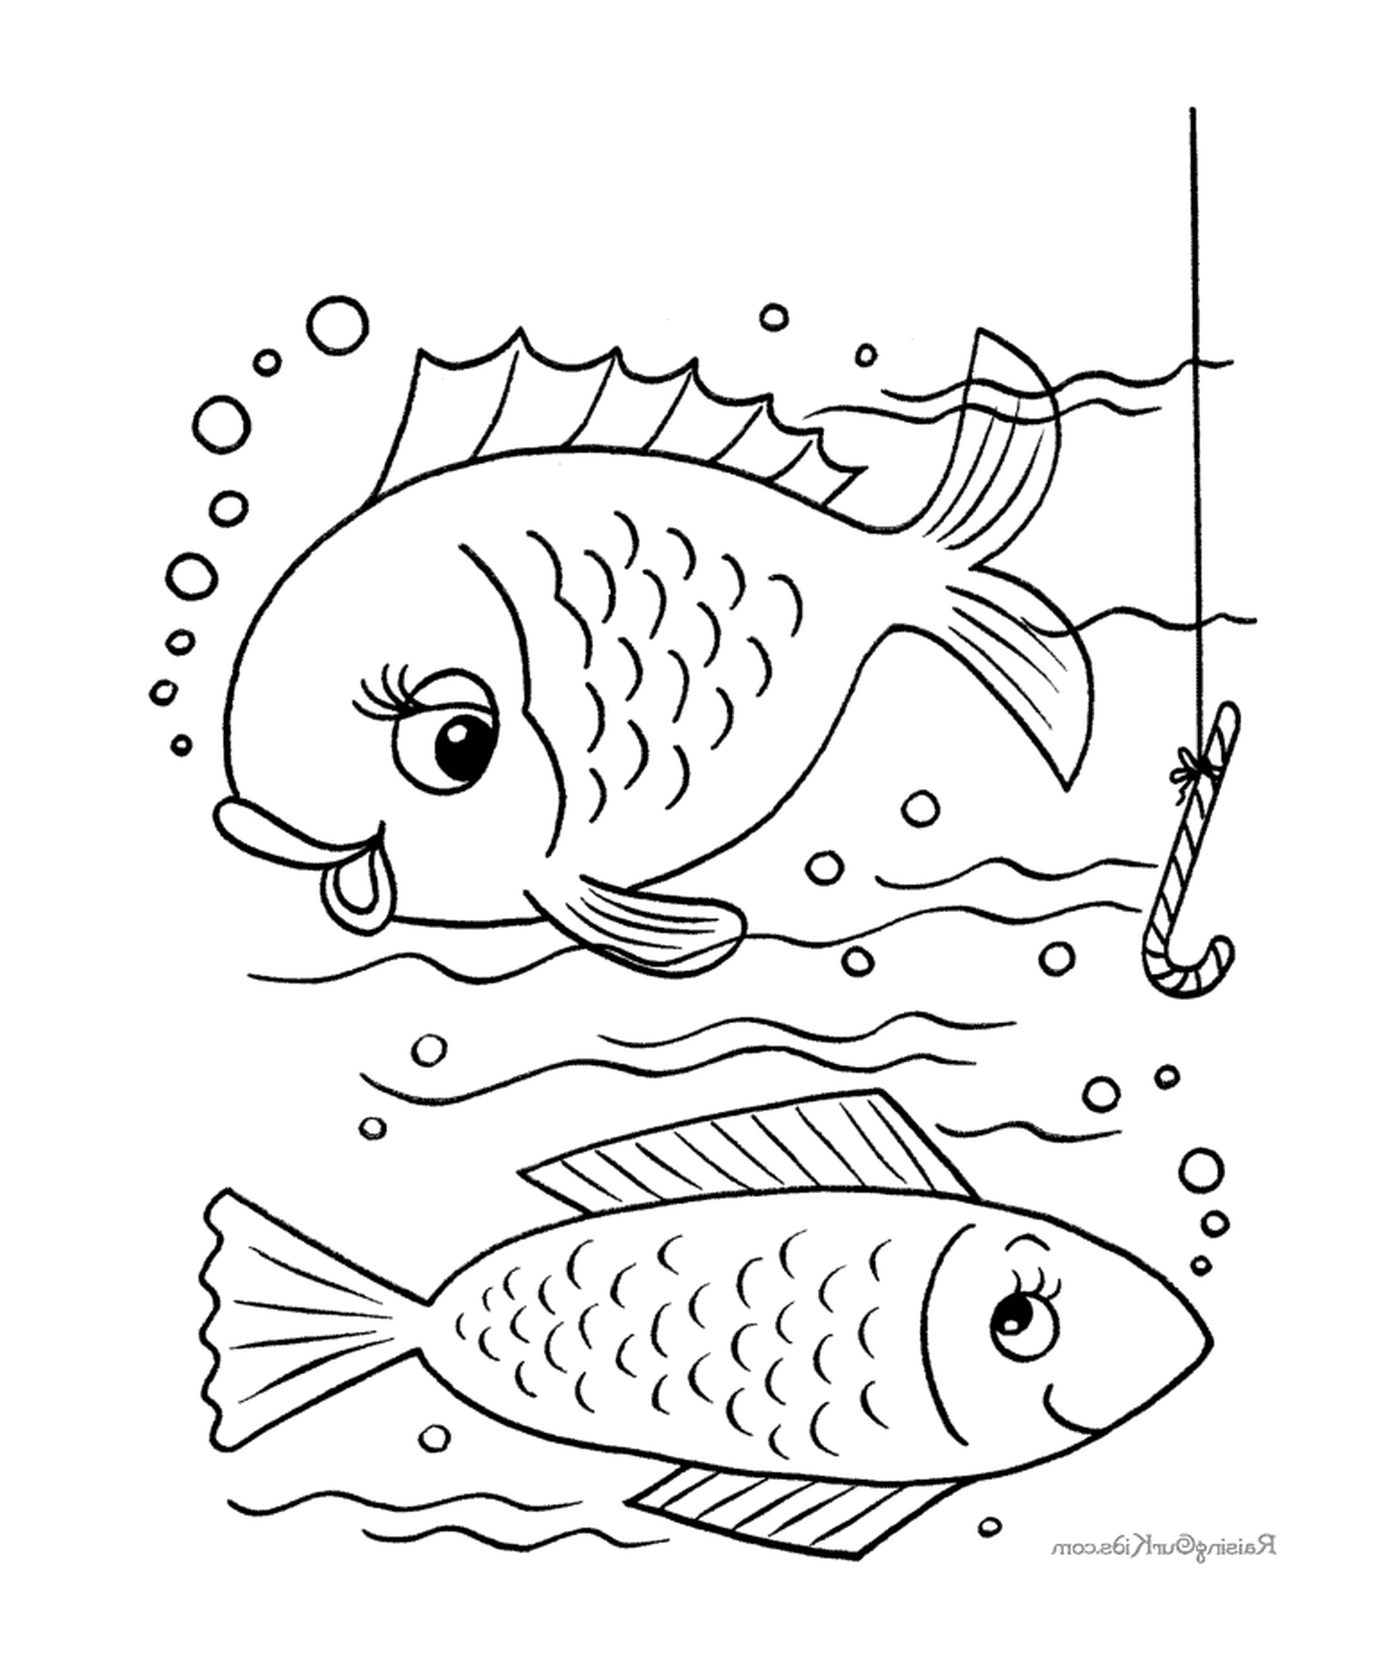  Zwei Fische schwimmen im Wasser, während ein anderer Fisch 